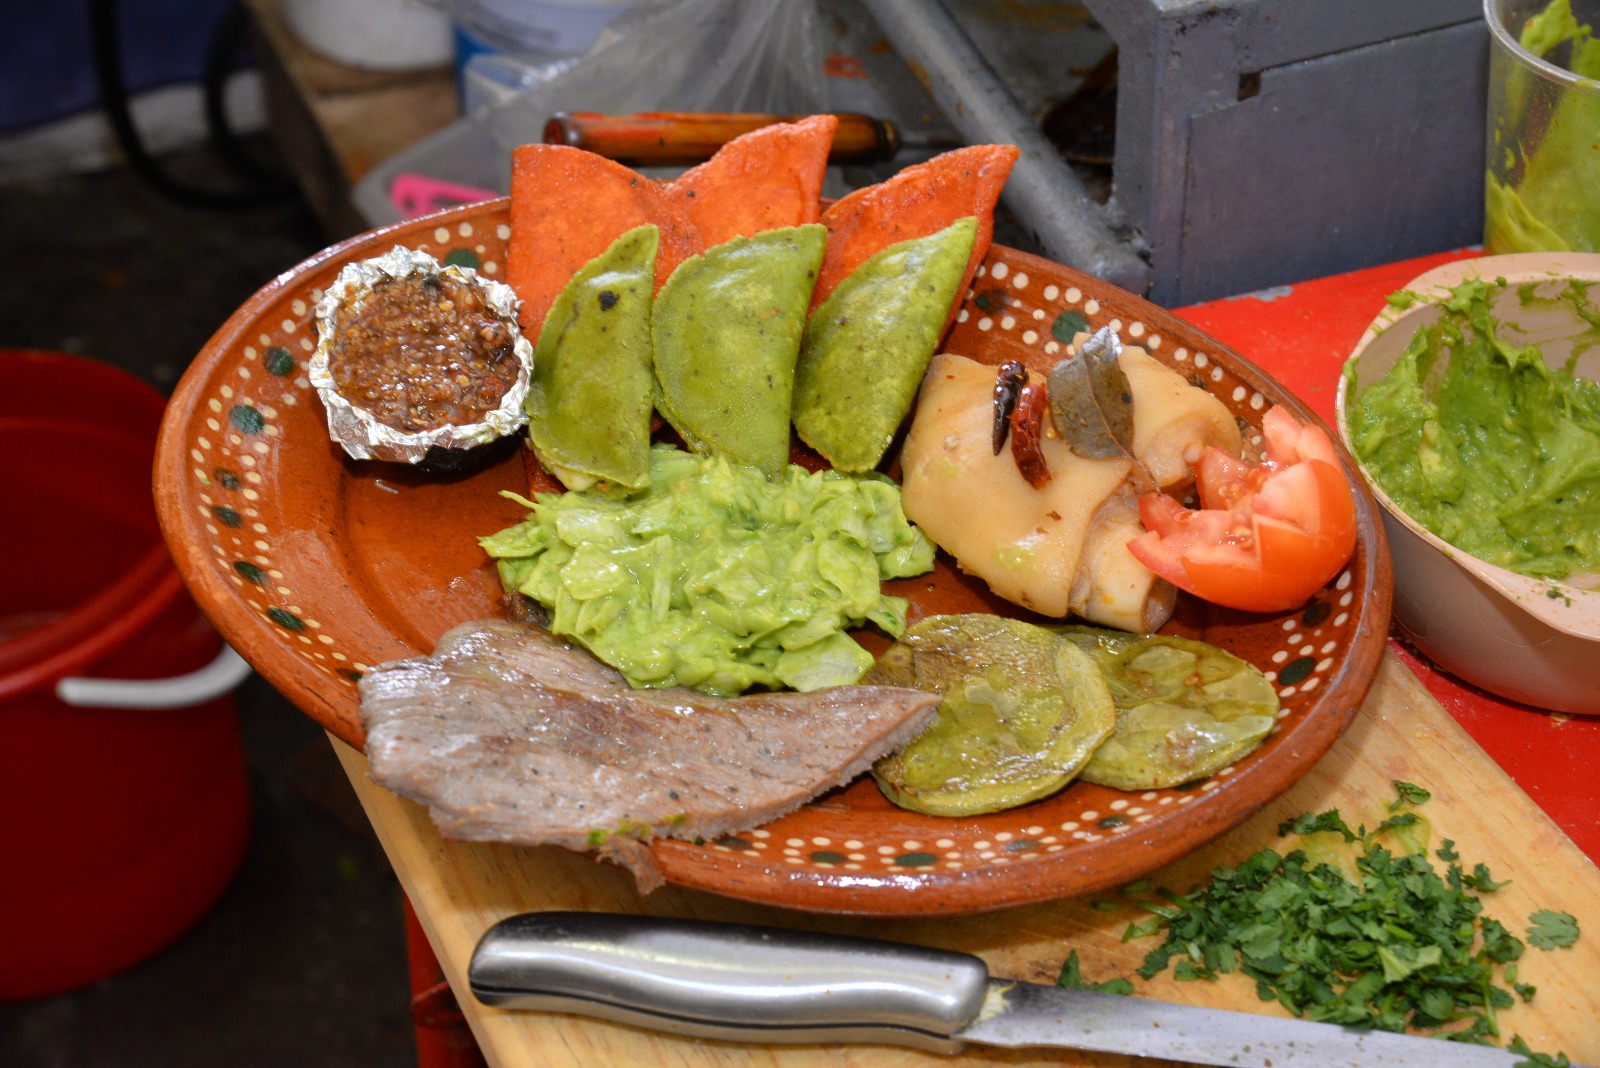 Expositores darán muestra del sabor y la originalidad con los que las Enchiladas se han ido innovando en su preparación